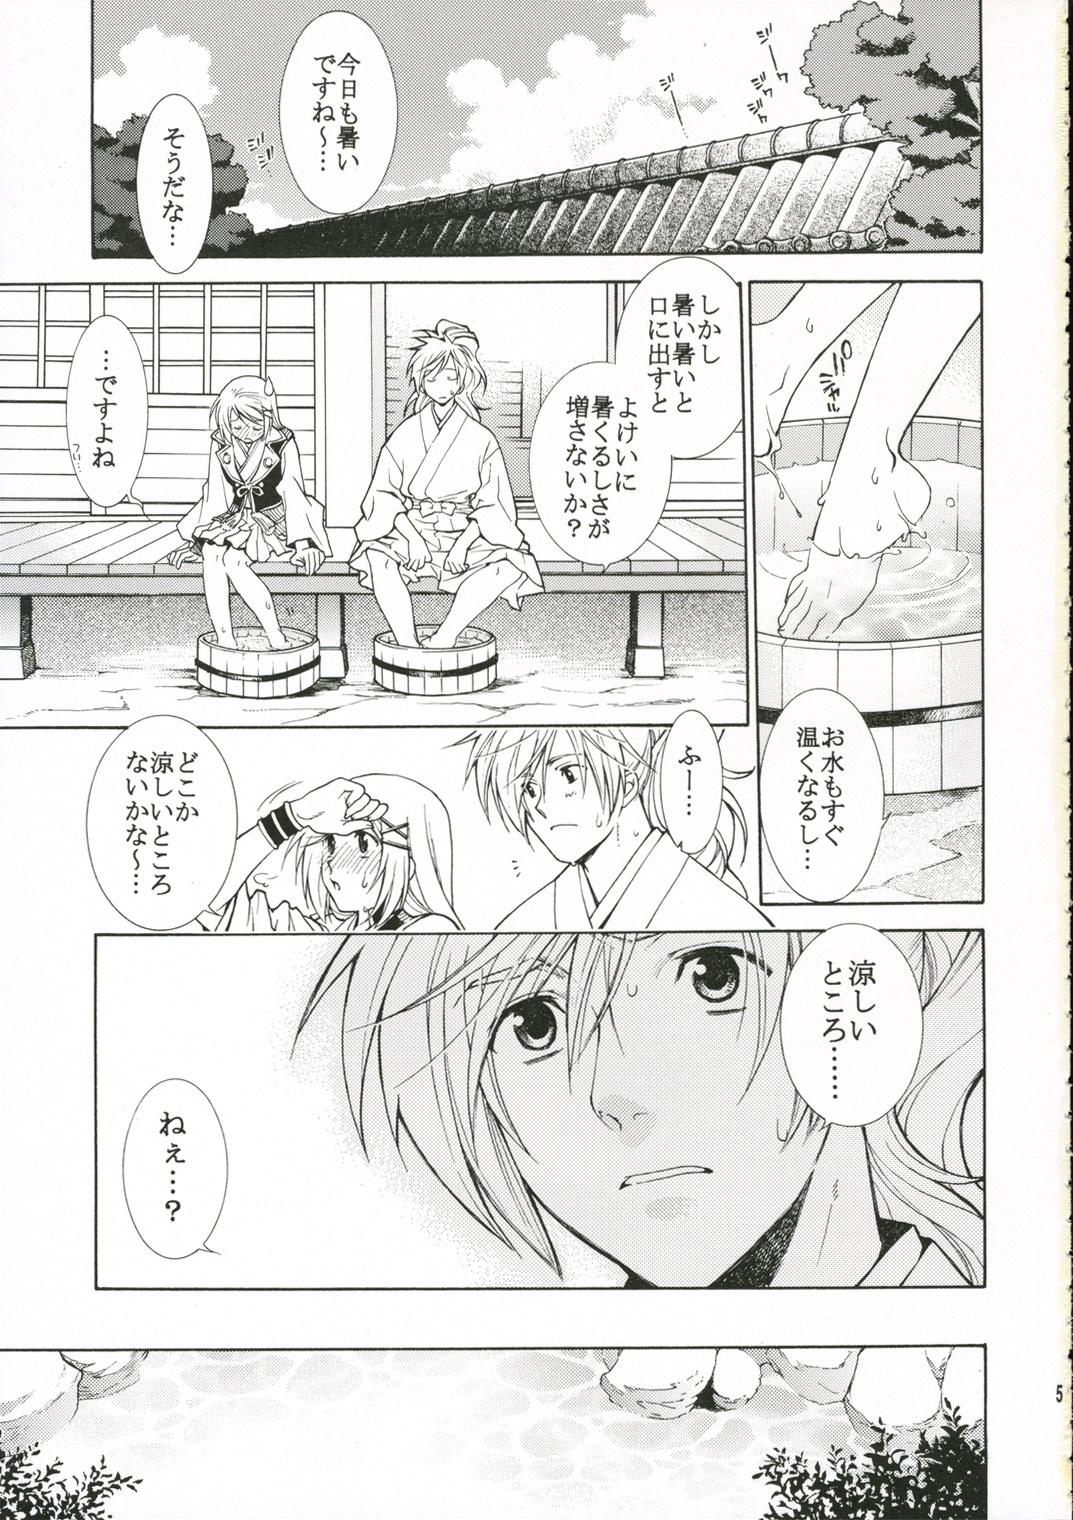 Couple Sex Hitoyasumi. - Harukanaru toki no naka de Parody - Page 4